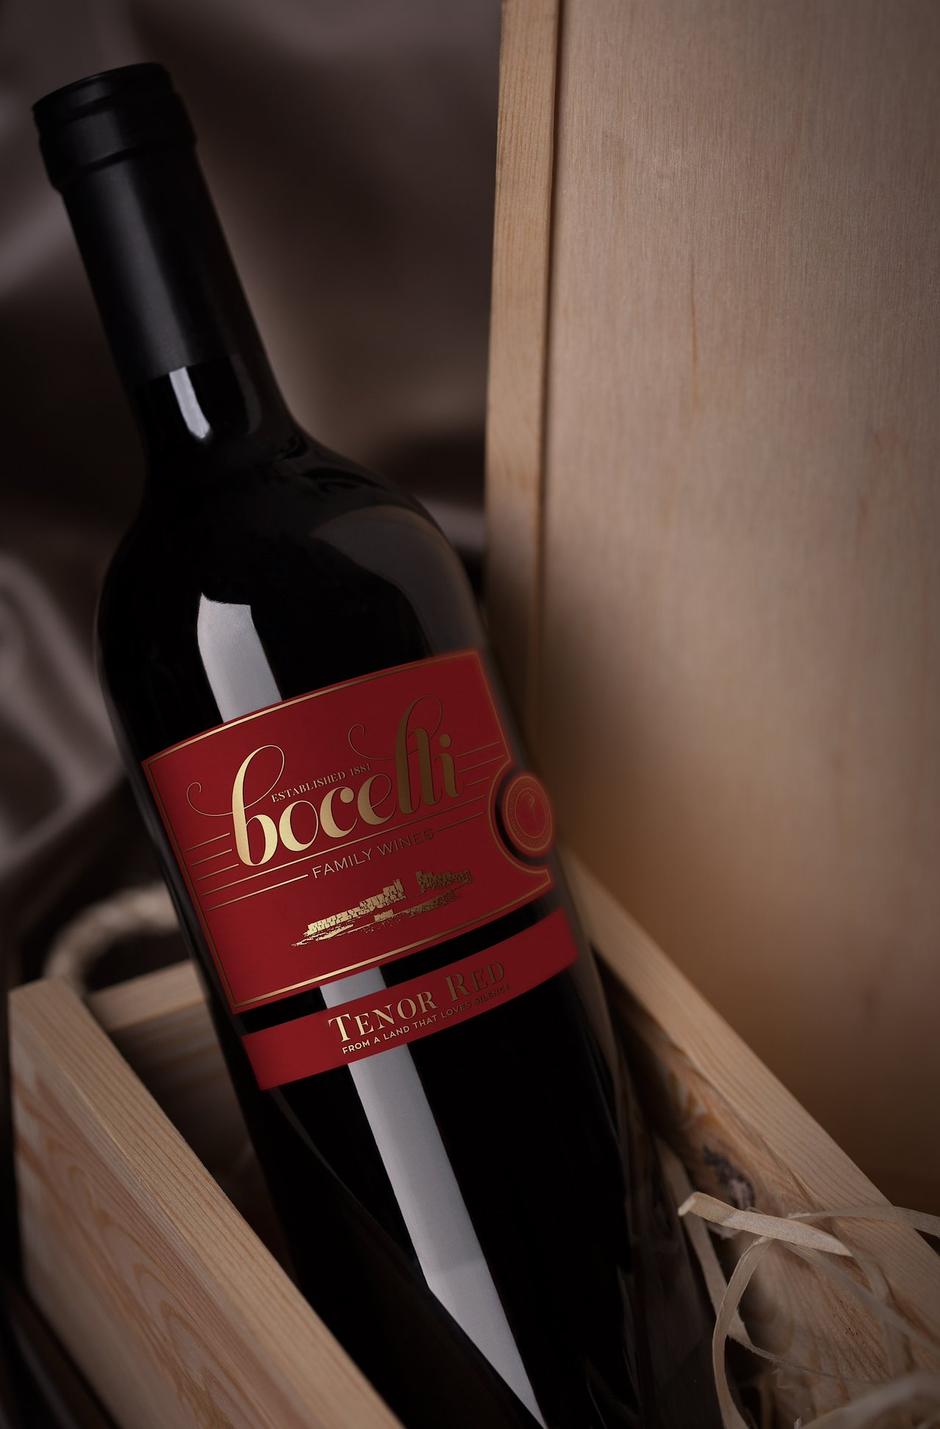  | Author: Bocelli wines